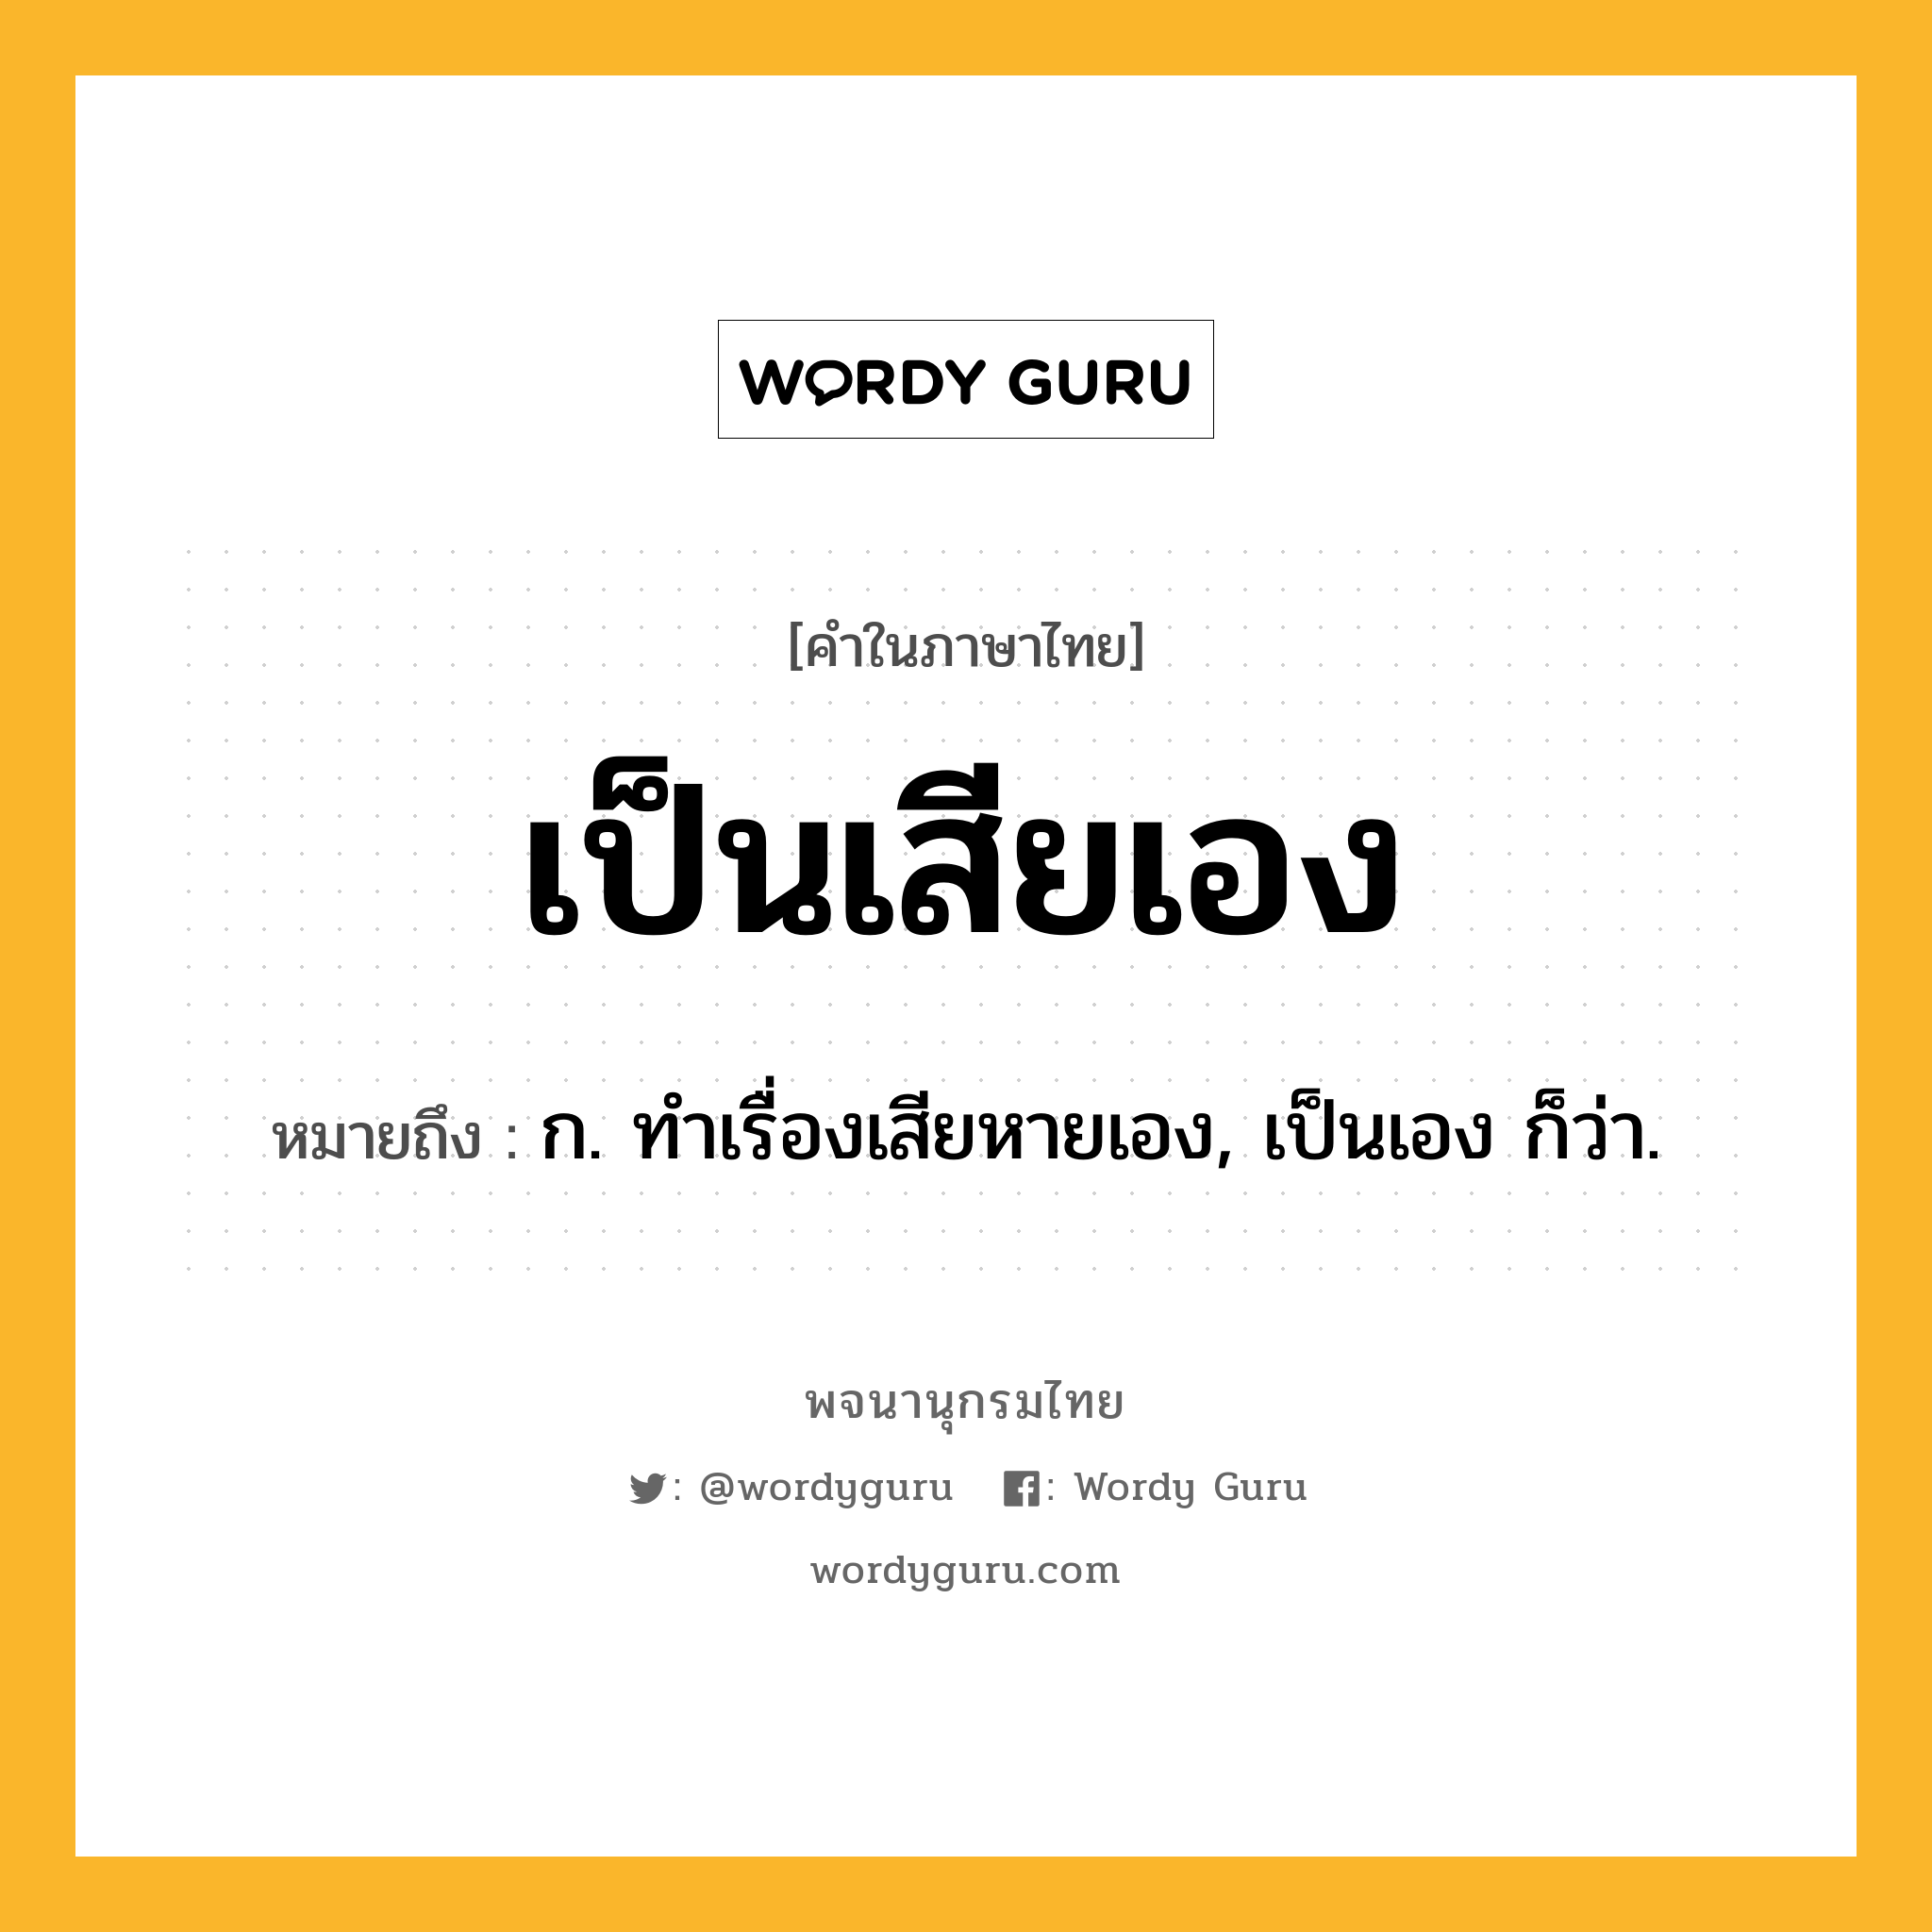 เป็นเสียเอง ความหมาย หมายถึงอะไร?, คำในภาษาไทย เป็นเสียเอง หมายถึง ก. ทำเรื่องเสียหายเอง, เป็นเอง ก็ว่า.